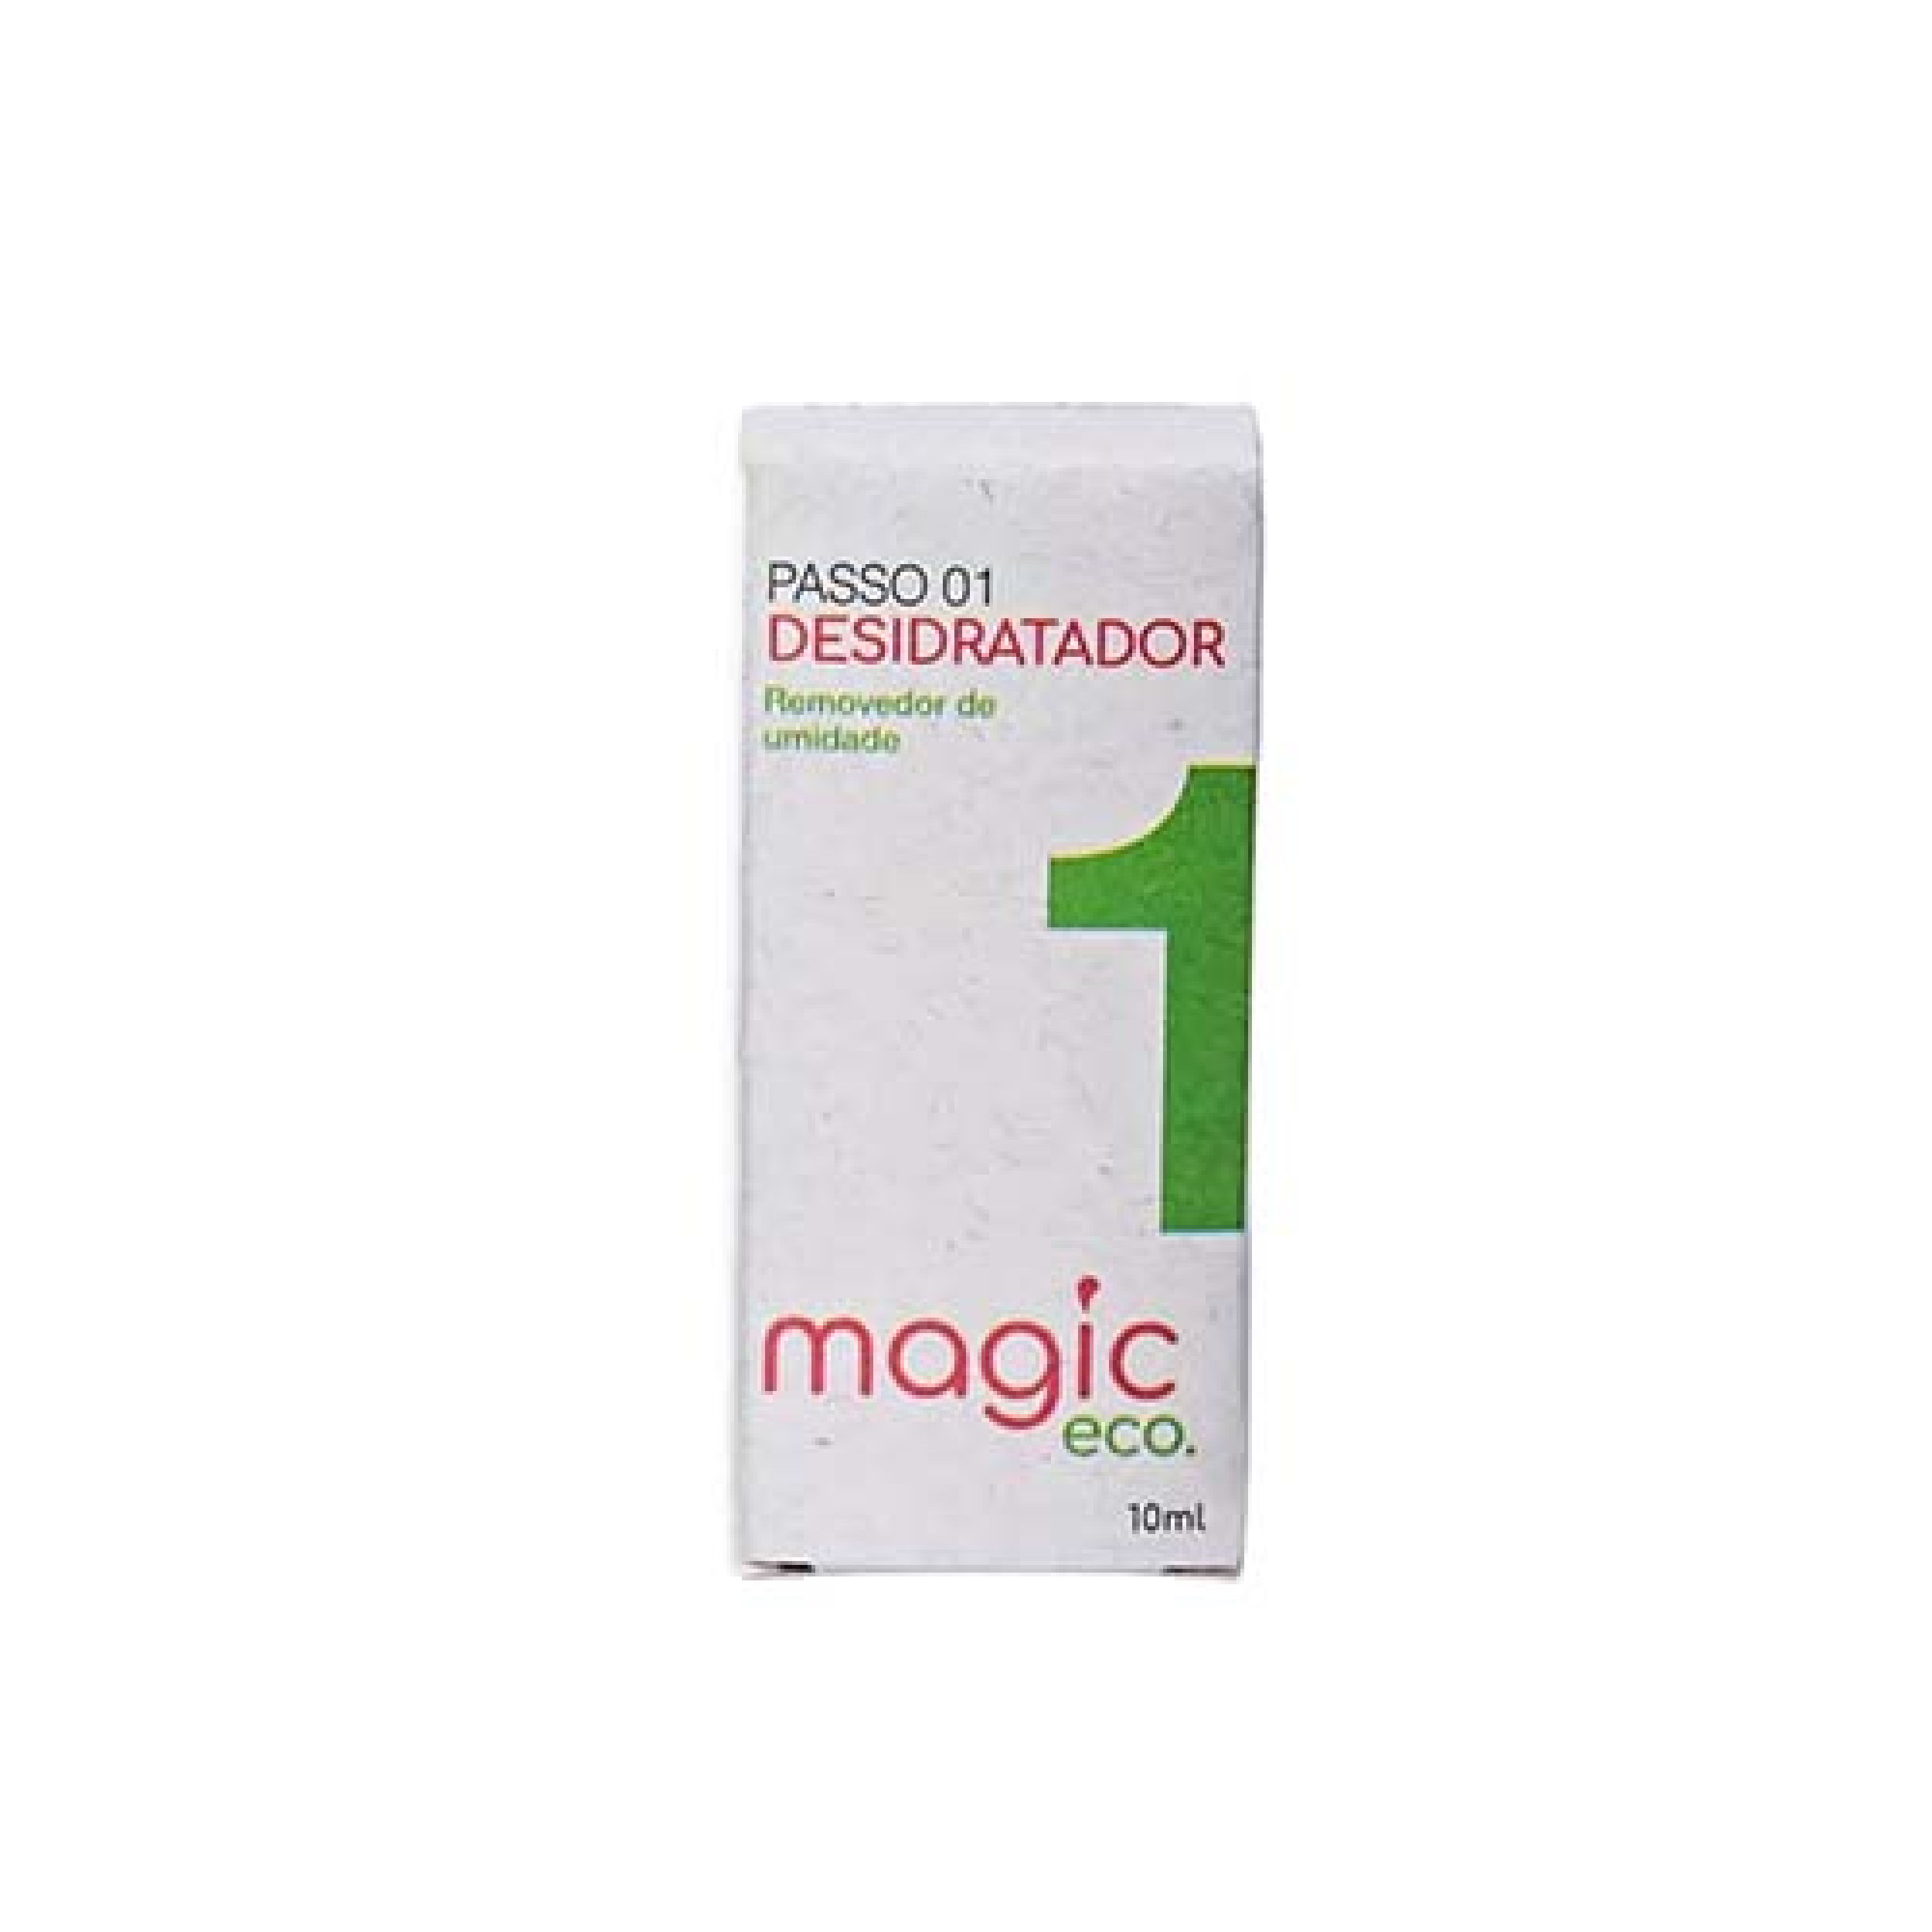 DESIDRATADOR 10ML - MAGIC ECO